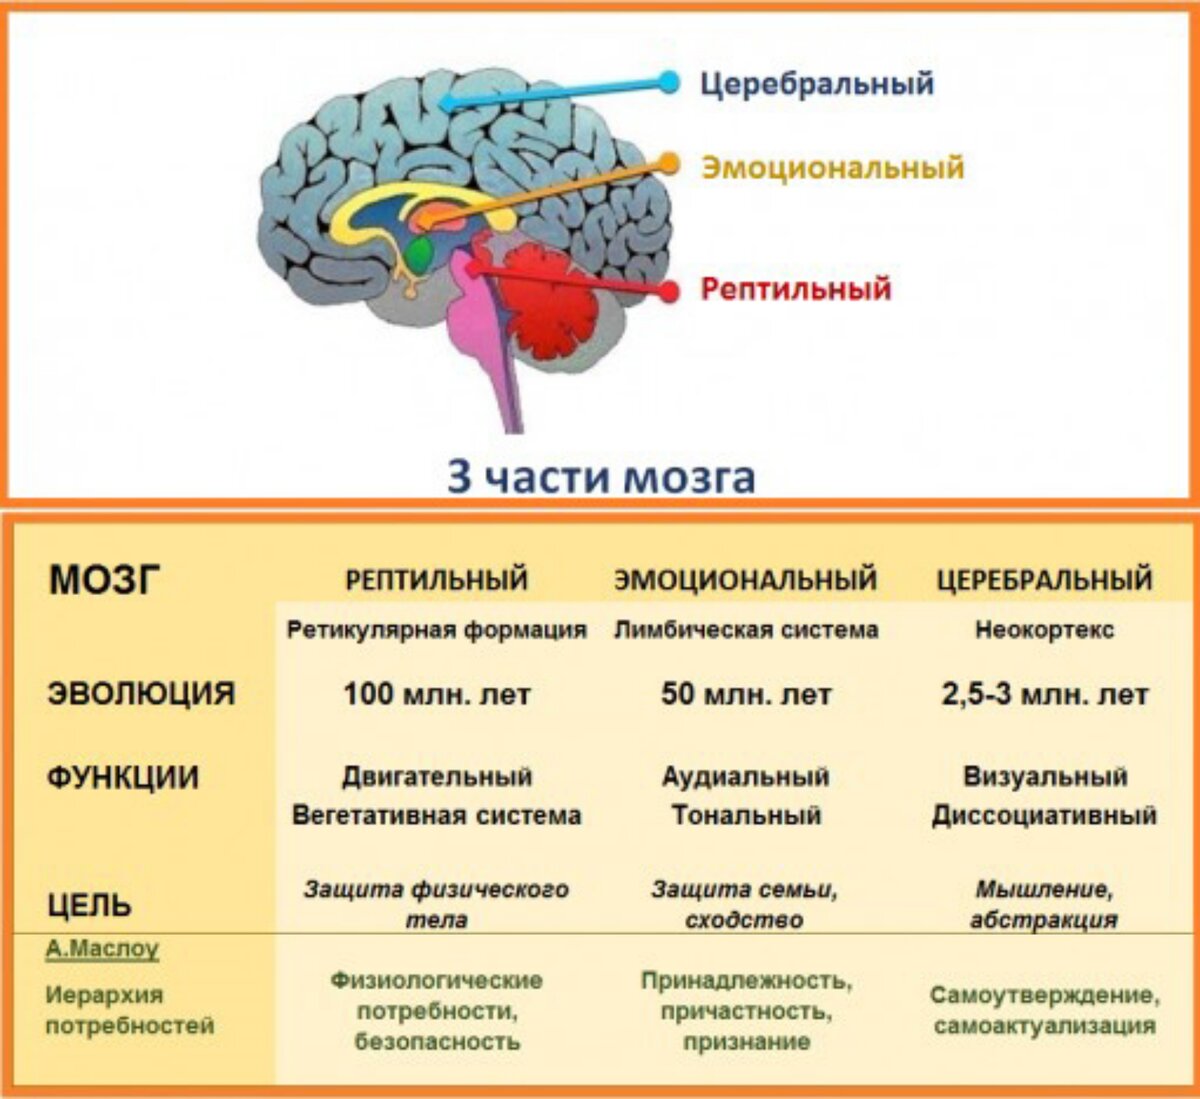 Рептильный мозг и лимбическая система. Отделы мозга рептильный мозг. Рептильный мозг и неокортекс. Строение мозга неокортекс. Неокортекс это простыми словами